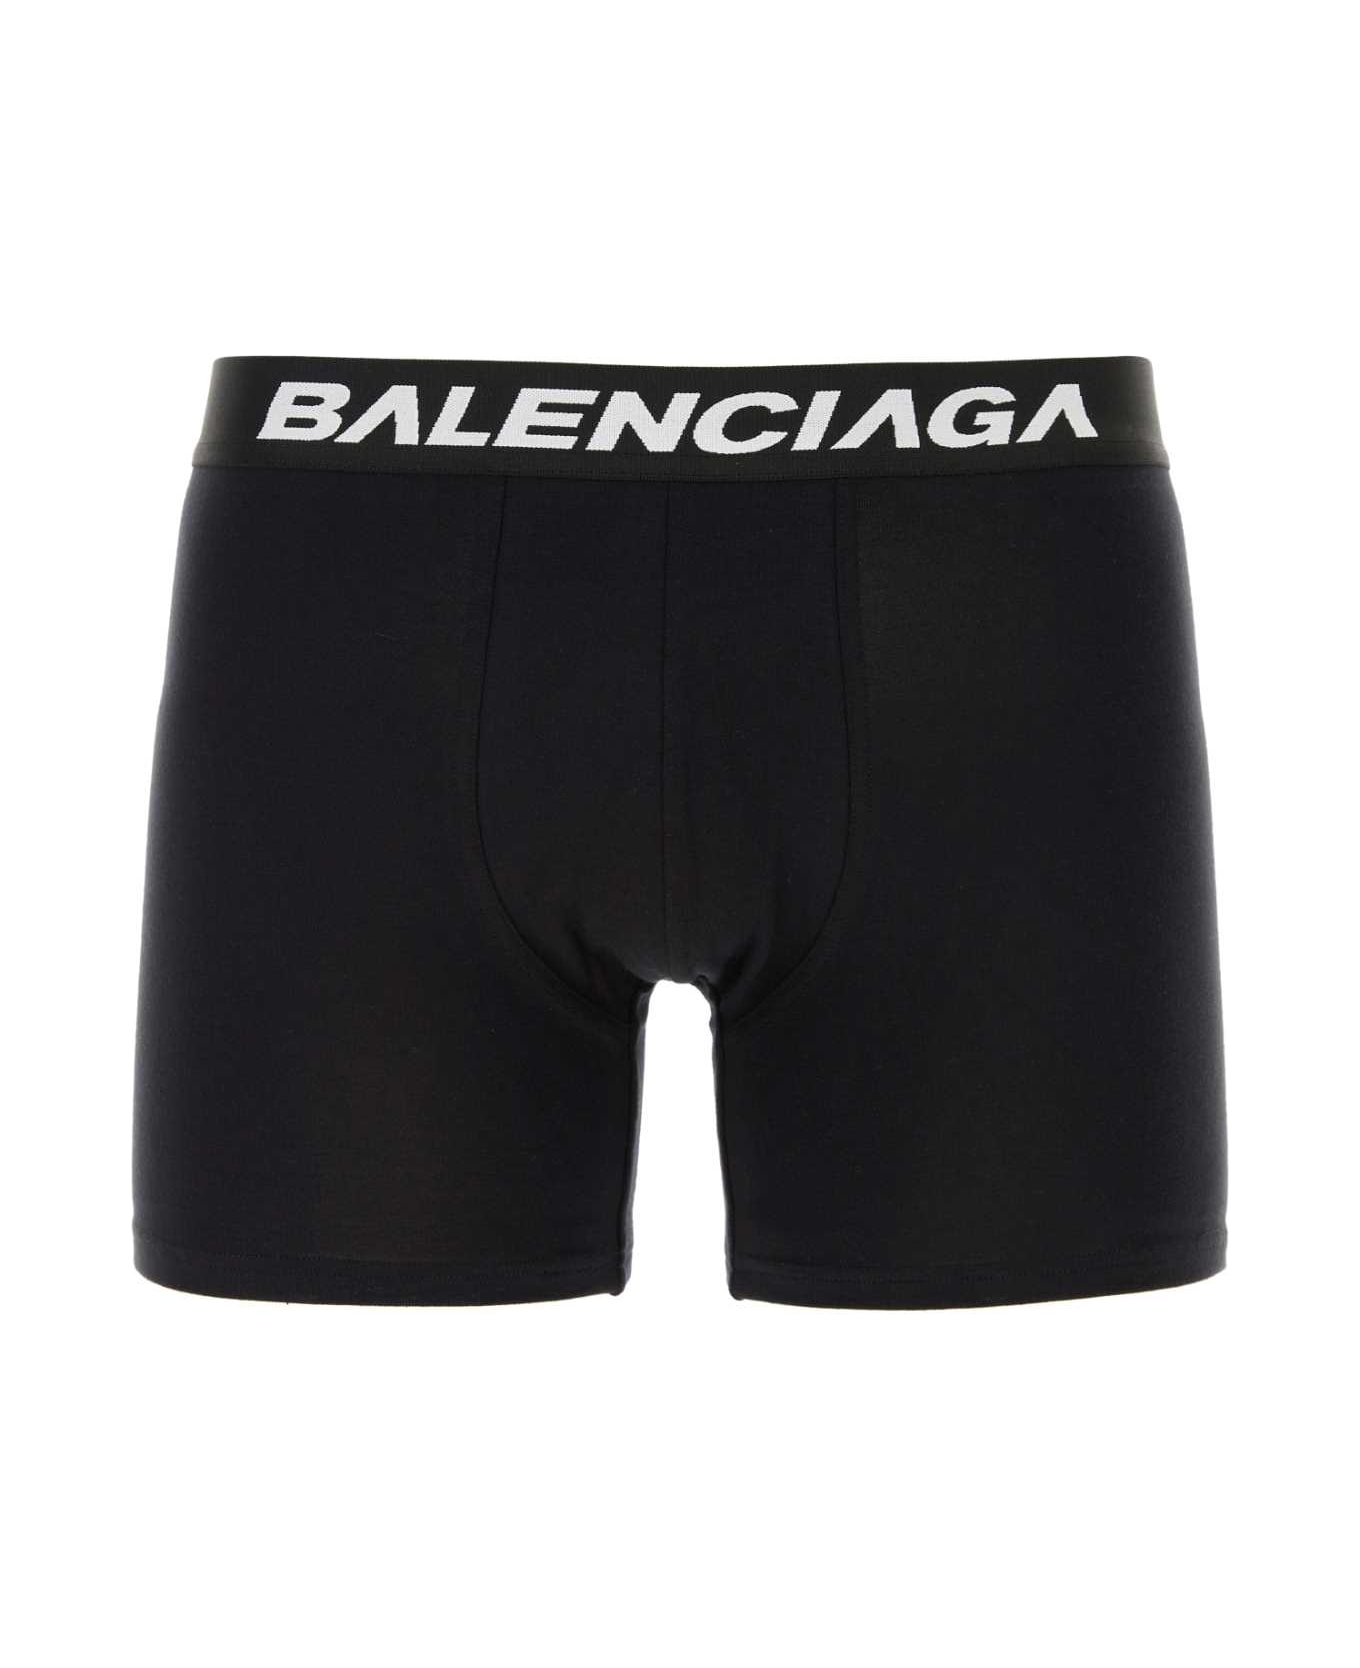 Balenciaga Black Stretch Cotton Racer Boxer - BLACKBLACK